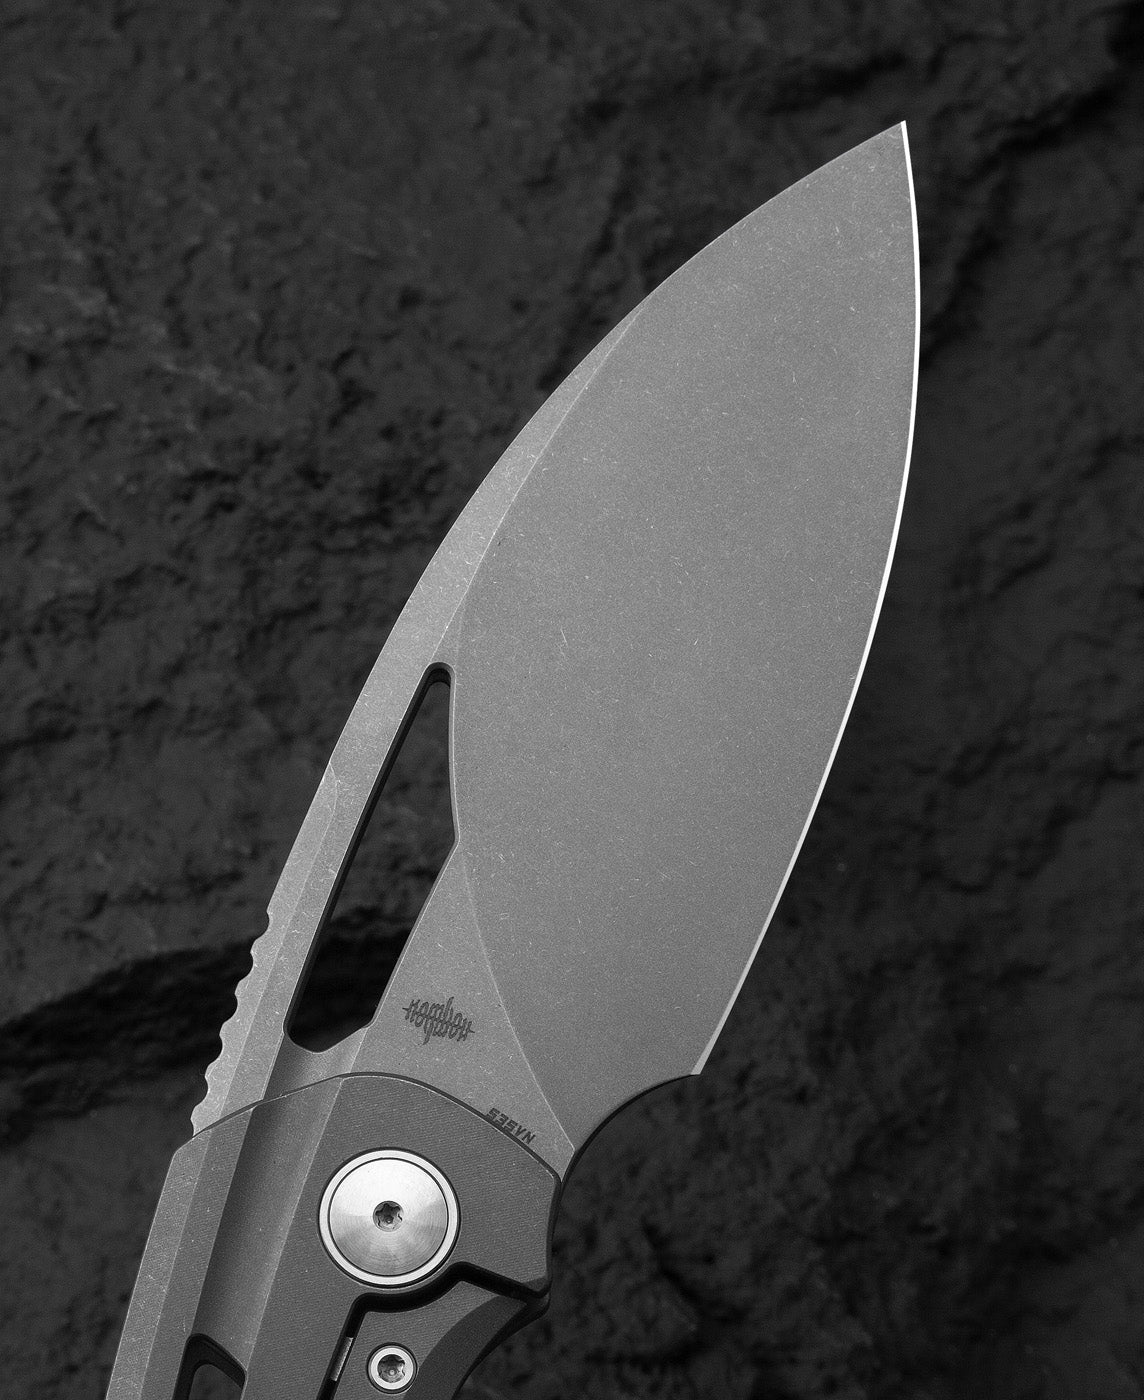 Bestech Knives Fairchild S35VN钢 钛合金柄 BT2202B 2480